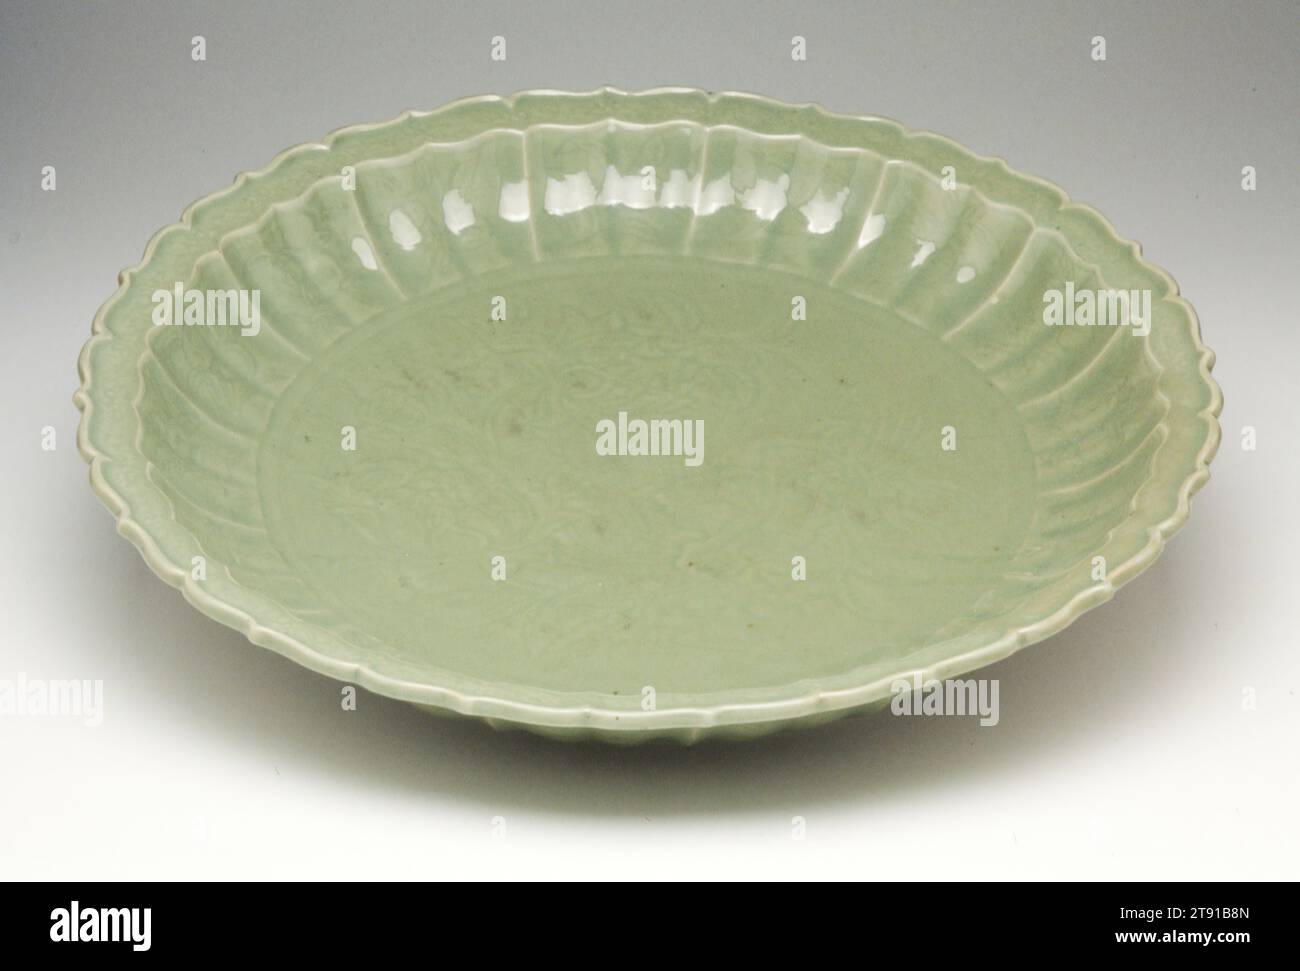 DISH, inizio XV secolo, H.4 x dia.21-5/8 poll., gres porcellanato con glassa celadon, Cina, XV secolo, il distretto di Lung-ch'uan nella provincia di Chekiang fu un importante centro di produzione di celadon dalle cinque dinastie (907-960) fino al periodo Ming (1368-1644). Celadon è semplicemente un termine descrittivo applicato alle ceramiche che rientrano in un'ampia gamma di colori da blu-verde a grigio-verde. Il celadon è stato prodotto in Corea, Giappone, Thailandia ed esportato dalla Cina in India, Persia, Turchia, Egitto e Sud-Est asiatico. Foto Stock